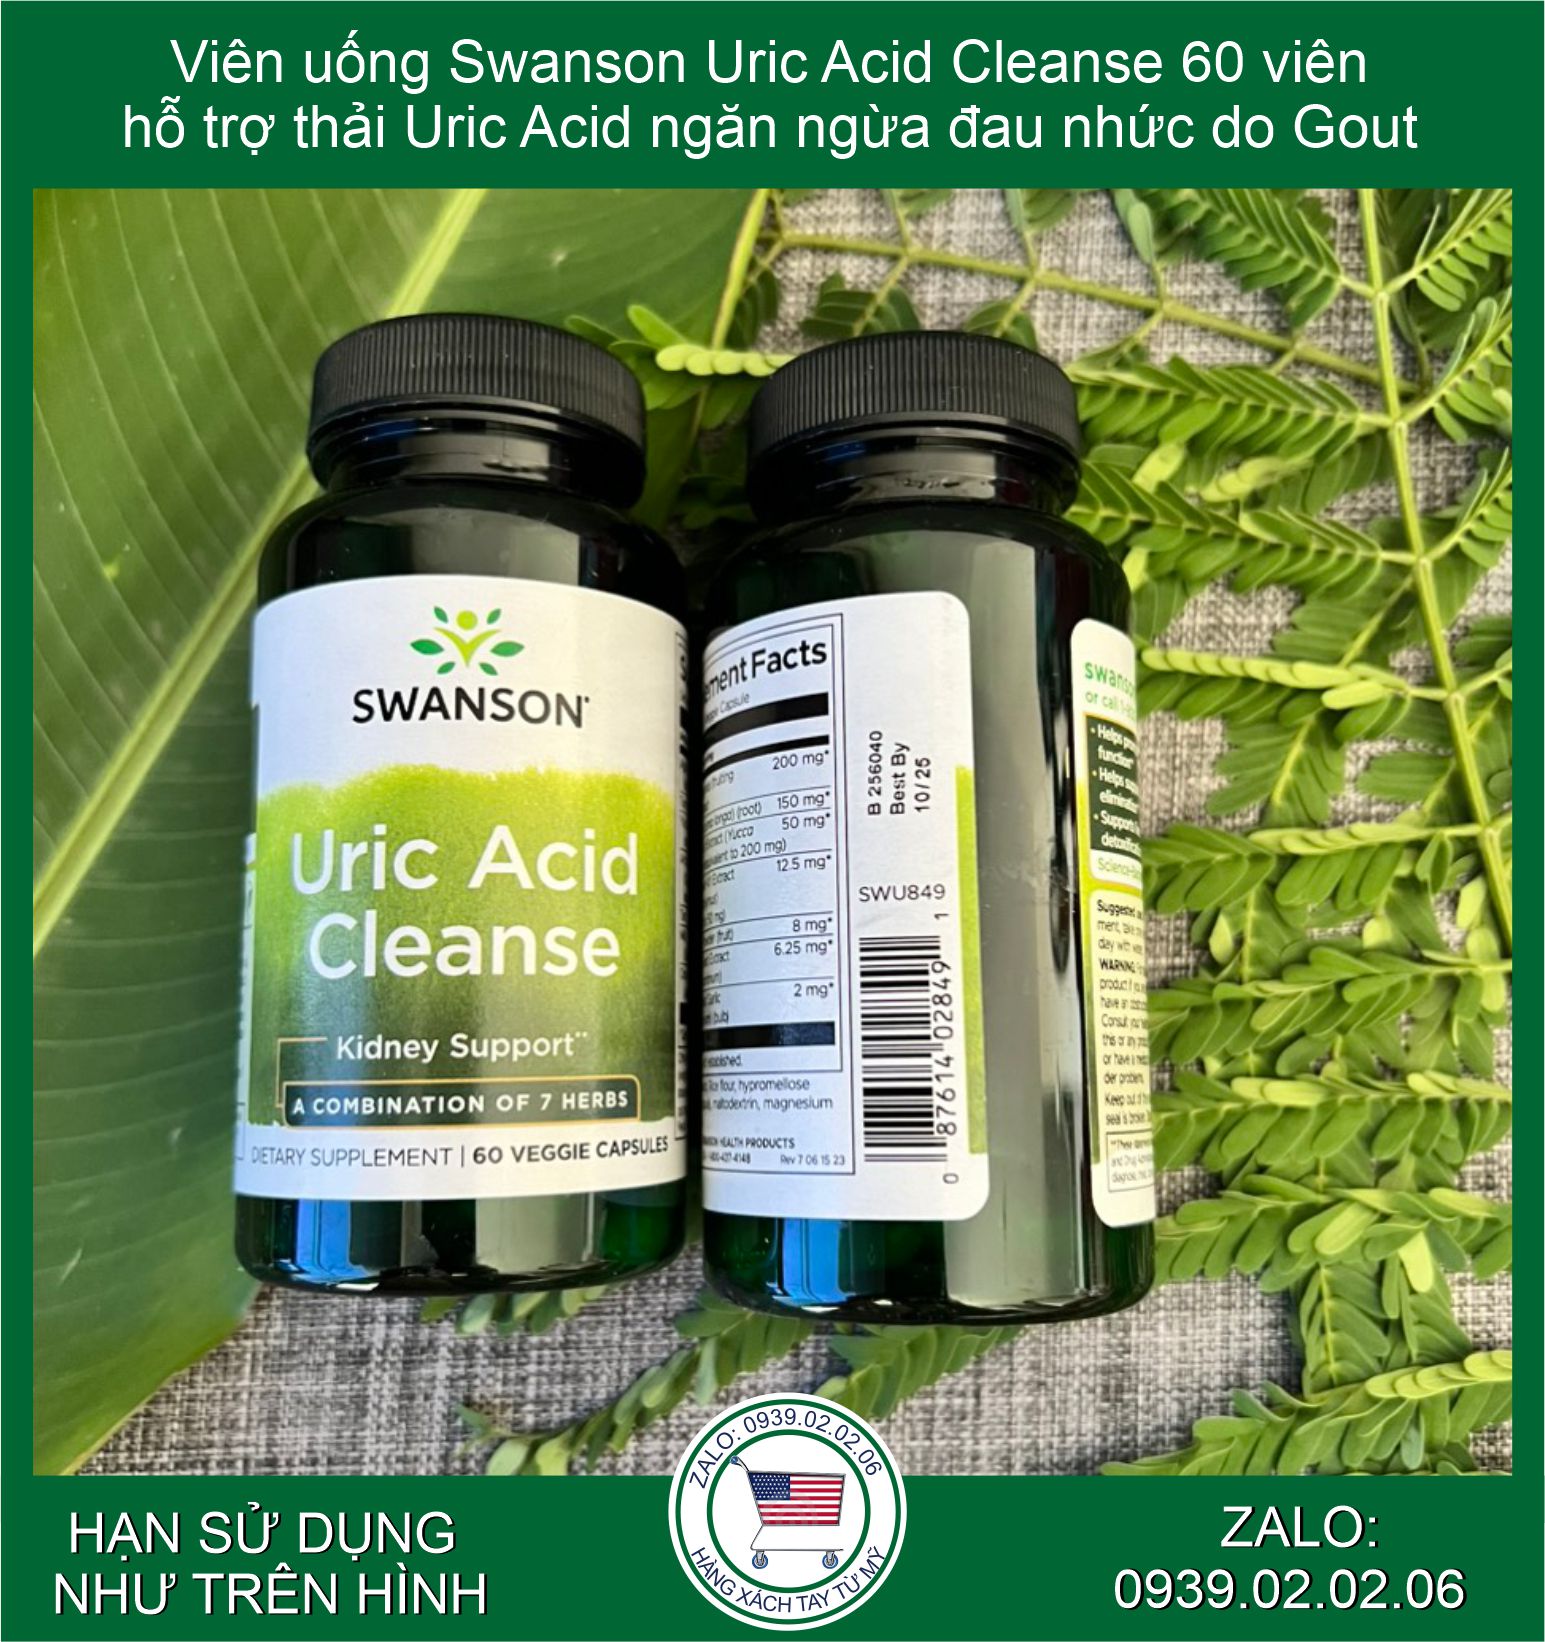 Viên uống Swanson Uric Acid Cleanse 60 viên hỗ trợ thải Uric Acid ngăn ngừa đau nhức do Gout